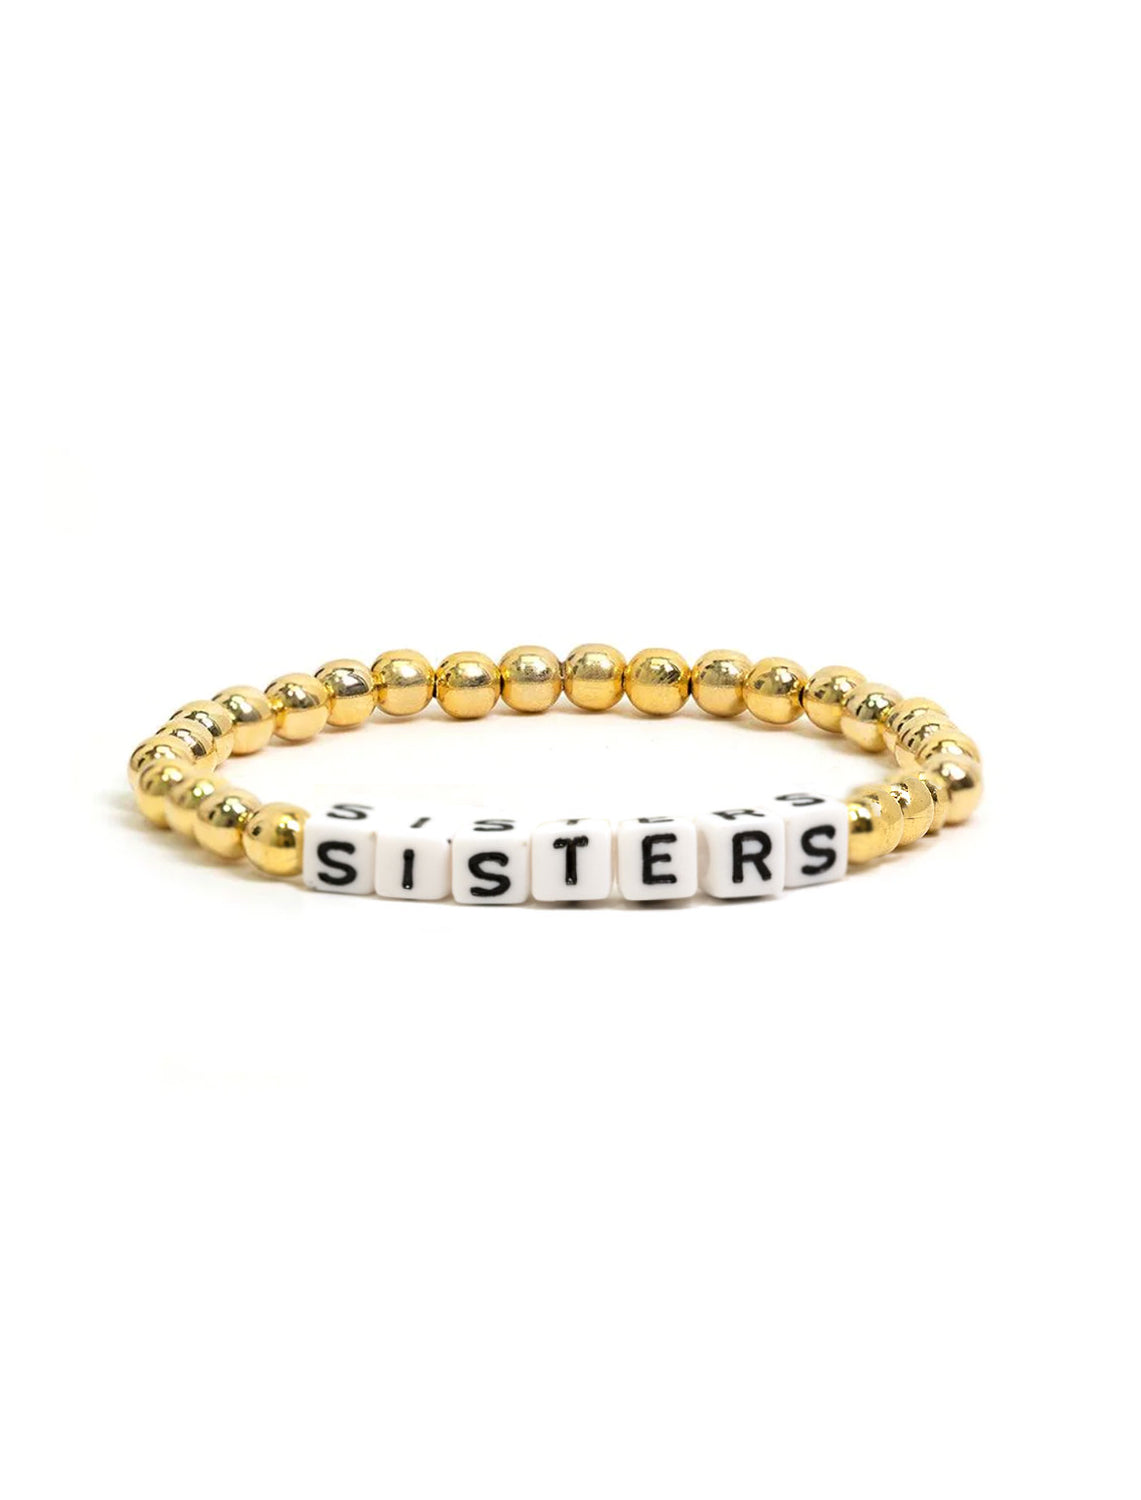 Buy Sister Bracelet for 3 Sister Bracelet for 2 Gift for Sister Silver,  Gold & Rose Gold Online in India - Etsy